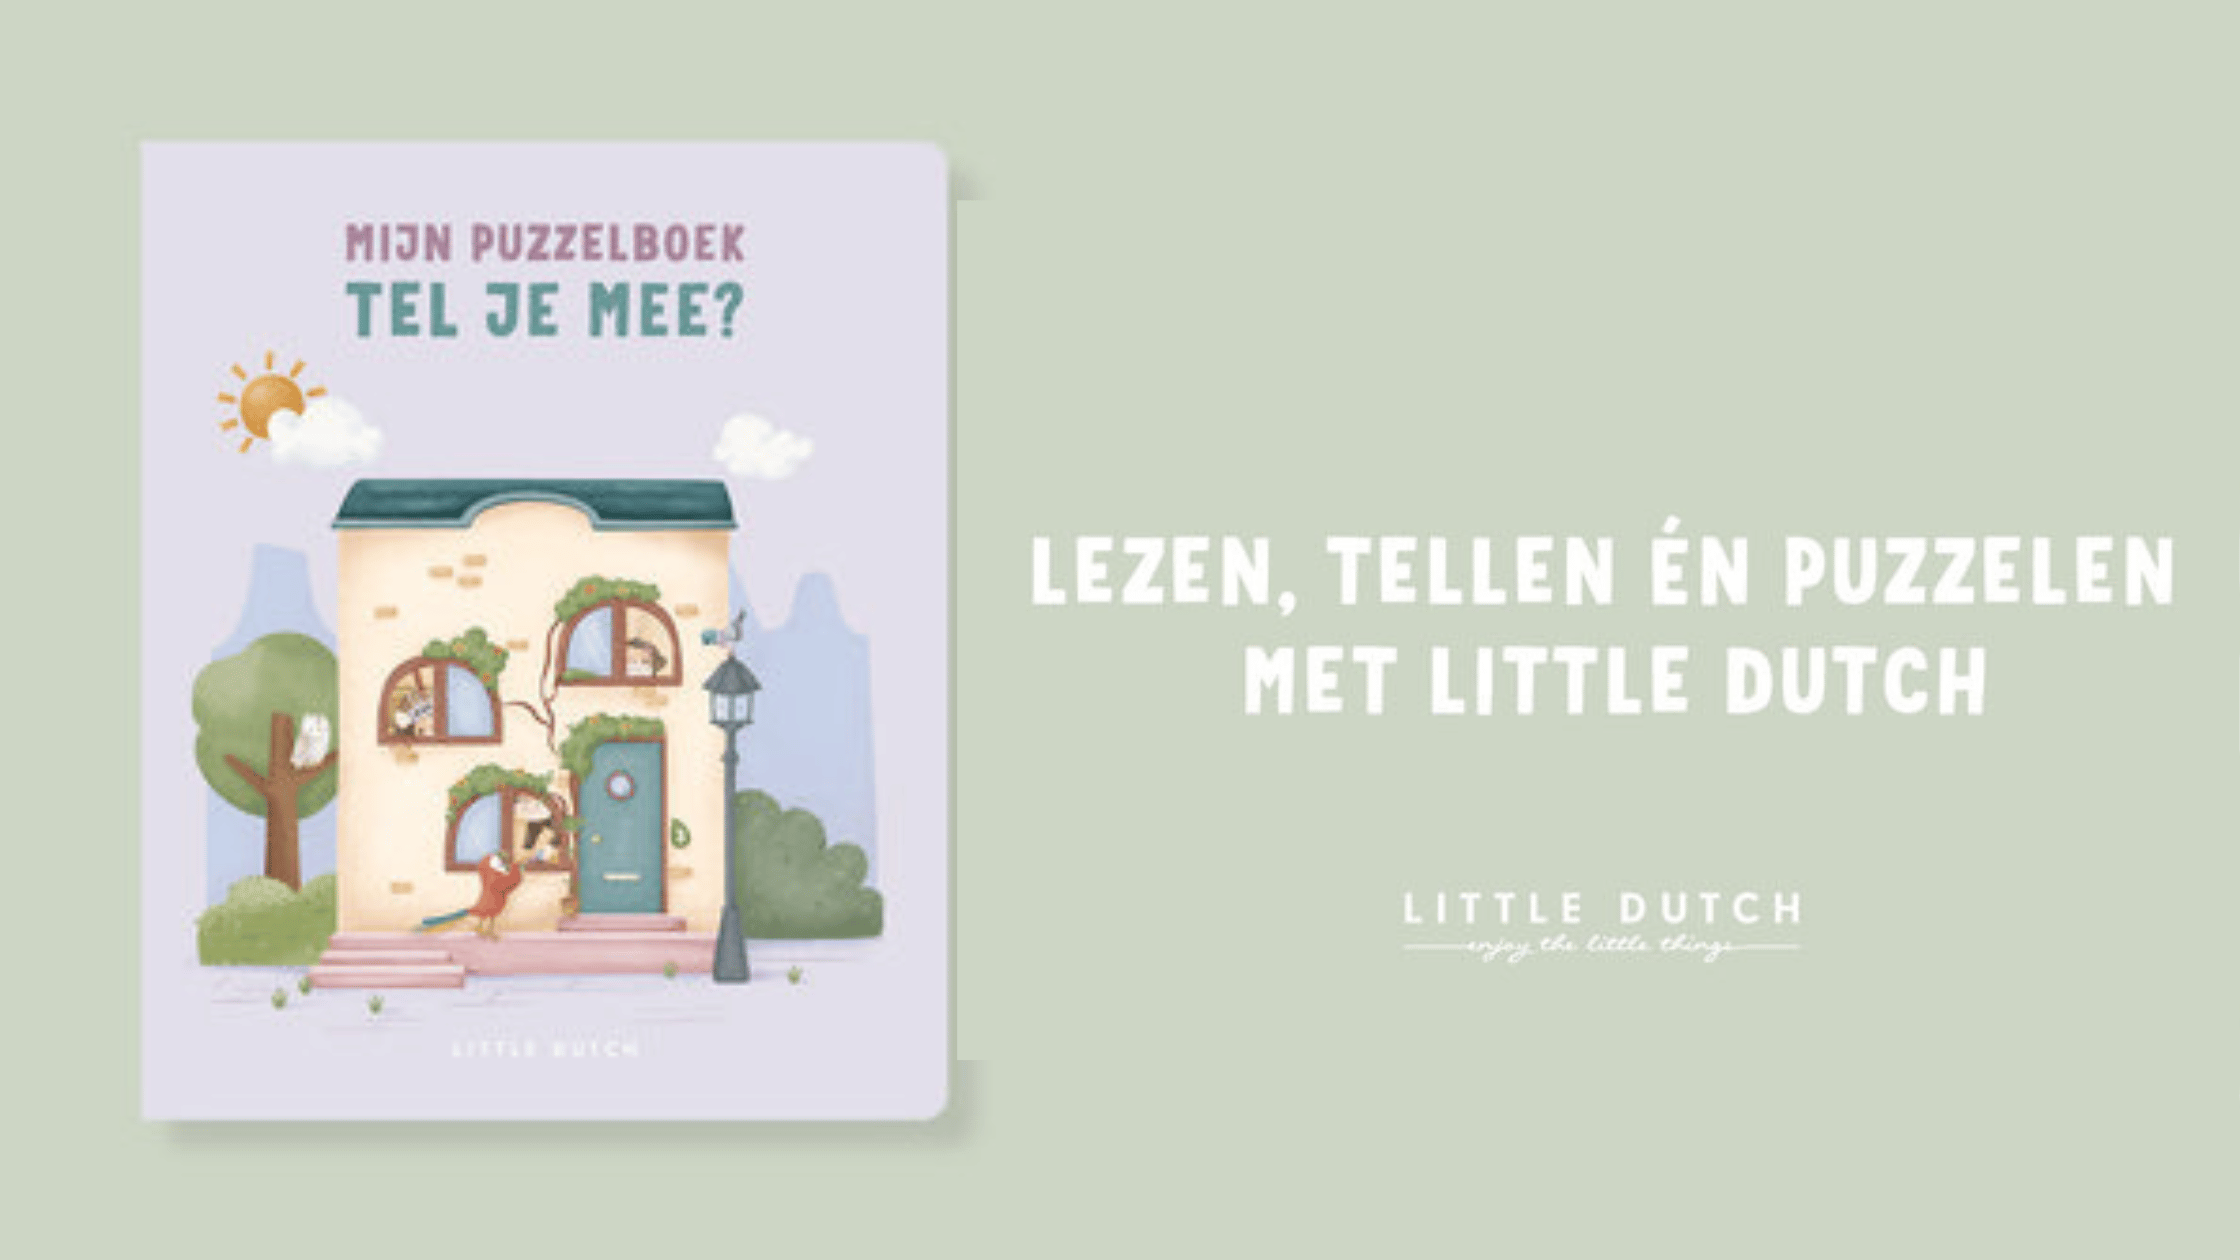 Little Dutch Mijn Puzzelboek Tel je mee